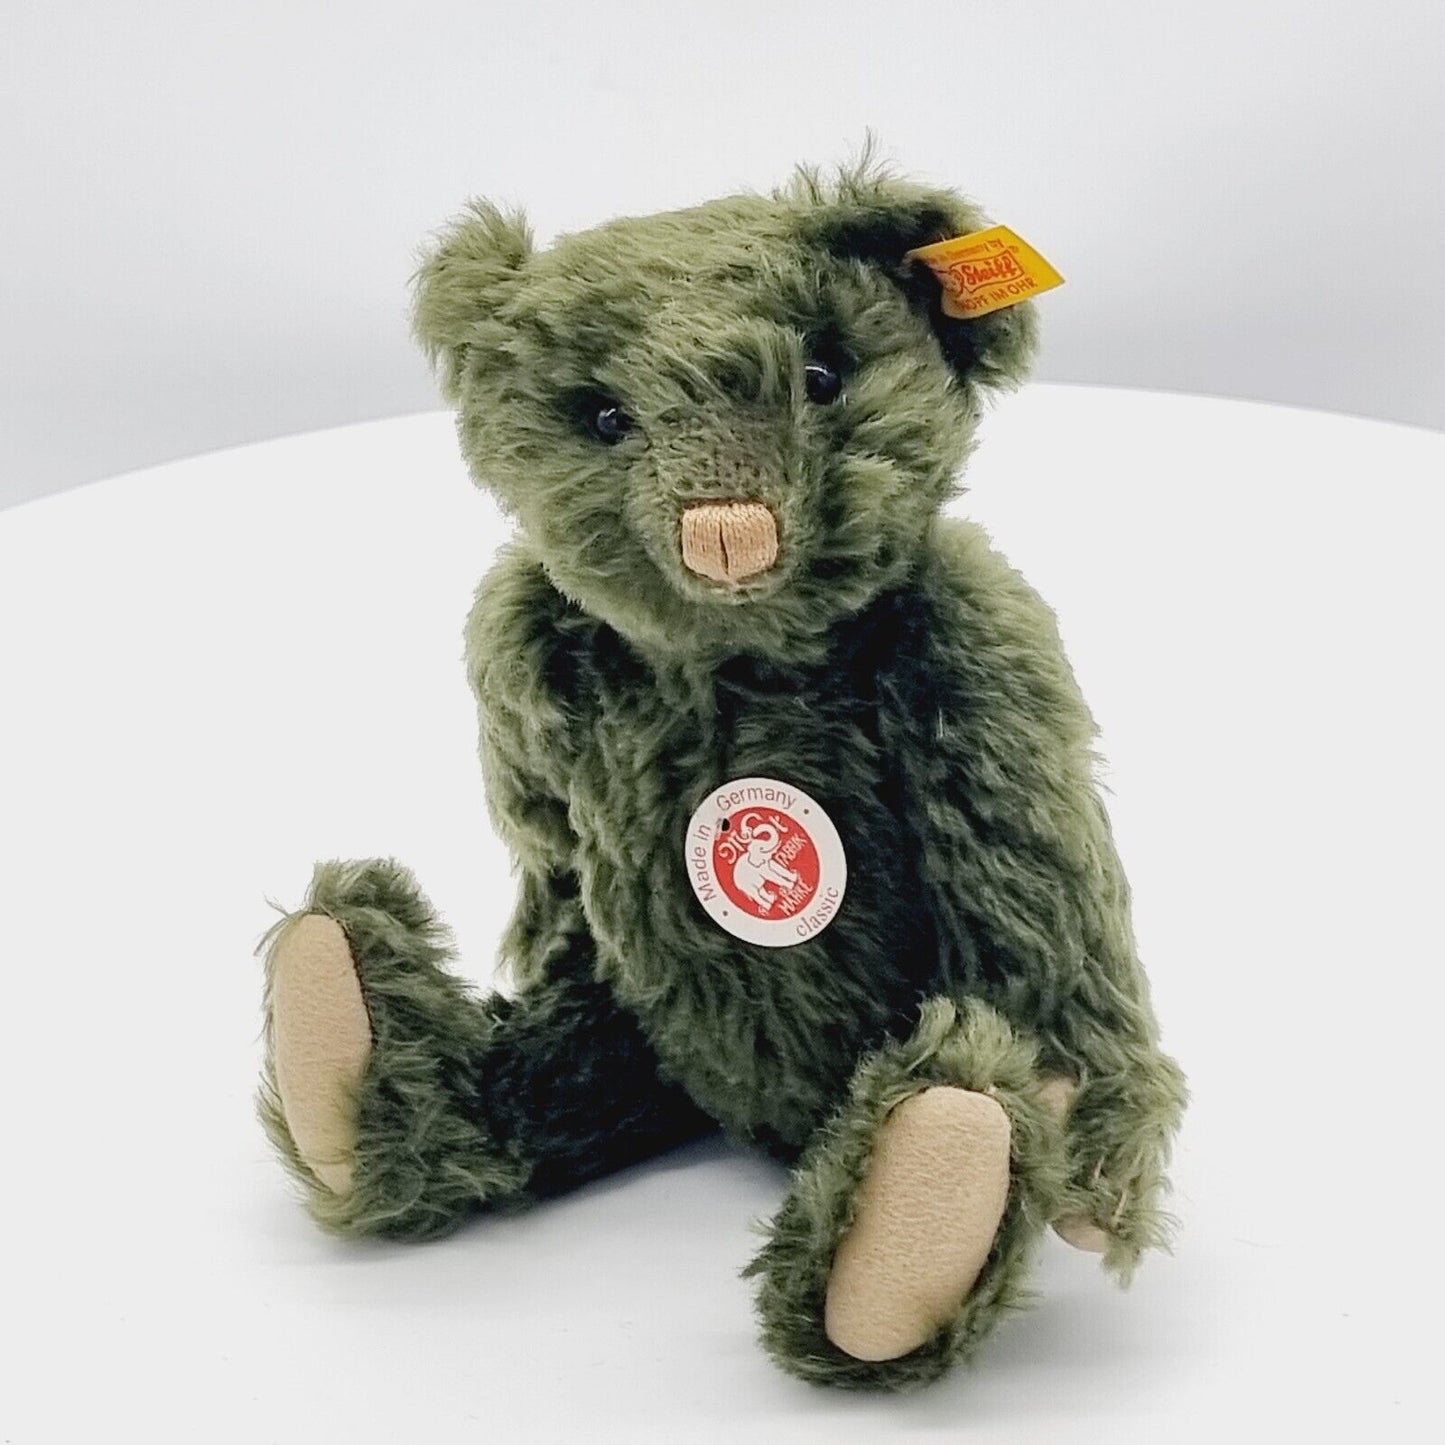 Steiff Classic Teddybär grün 26 cm 005480